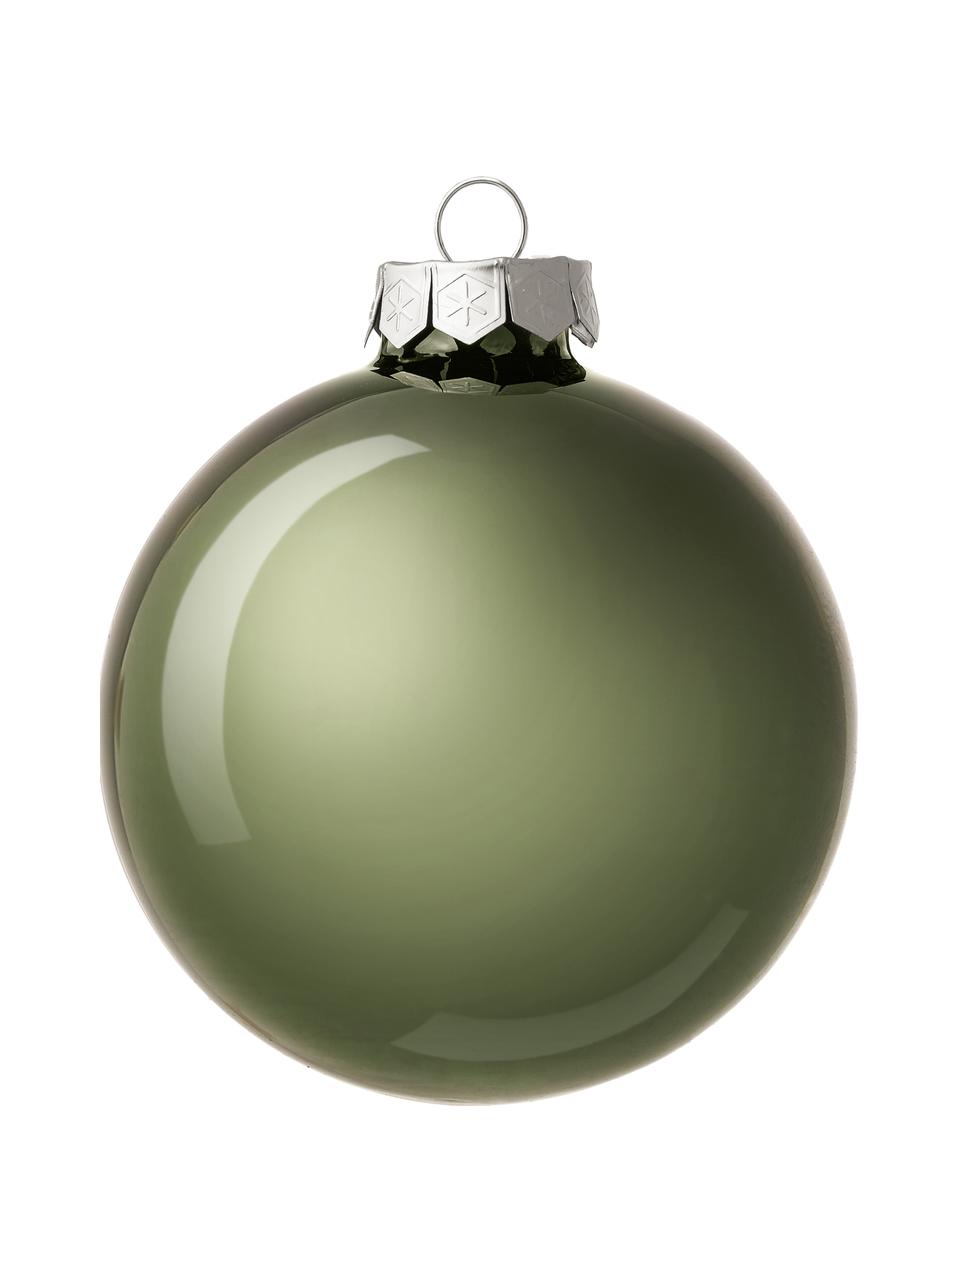 Kerstballenset Evergreen, 18 stuks, Saliegroen, Ø 8 x H 8 cm